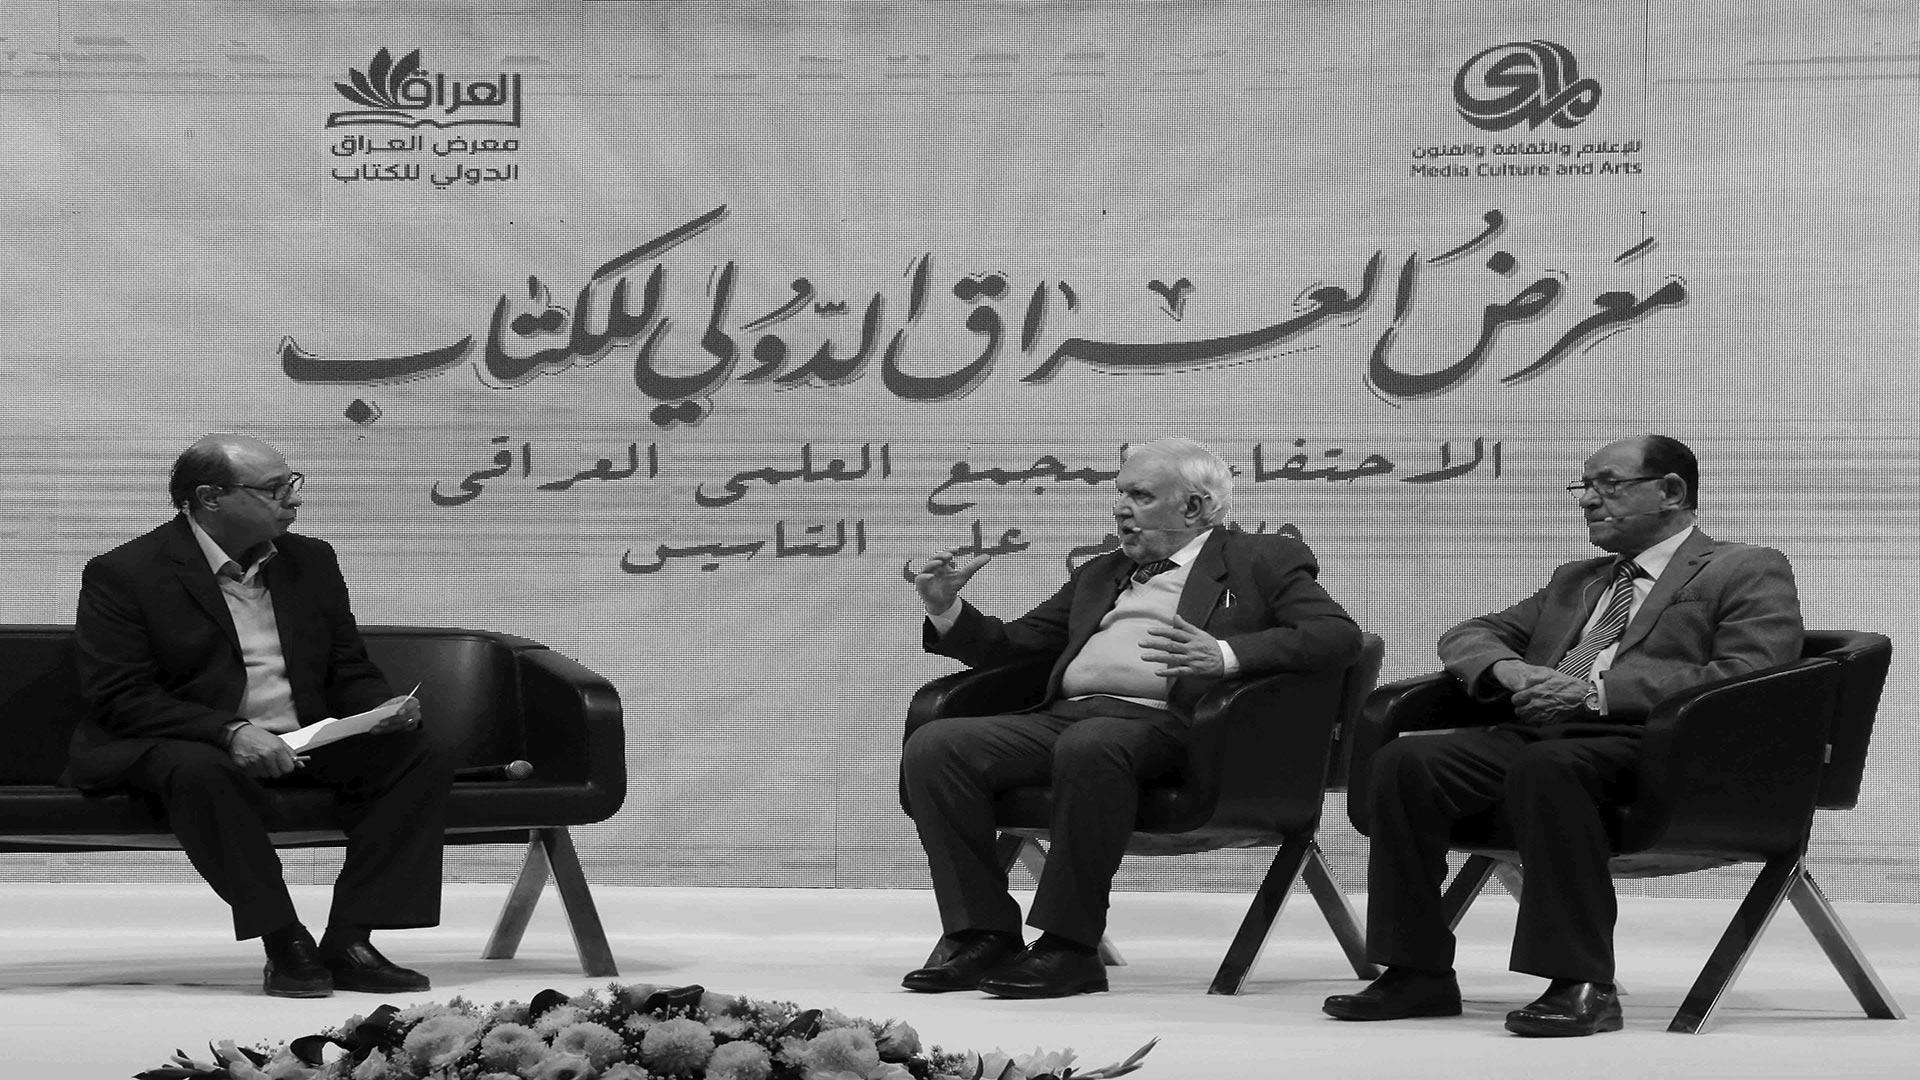 في ندوة .. الاحتفاء بالمجمع العلمي العراقي بمناسبة 75 عام على تأسيسه